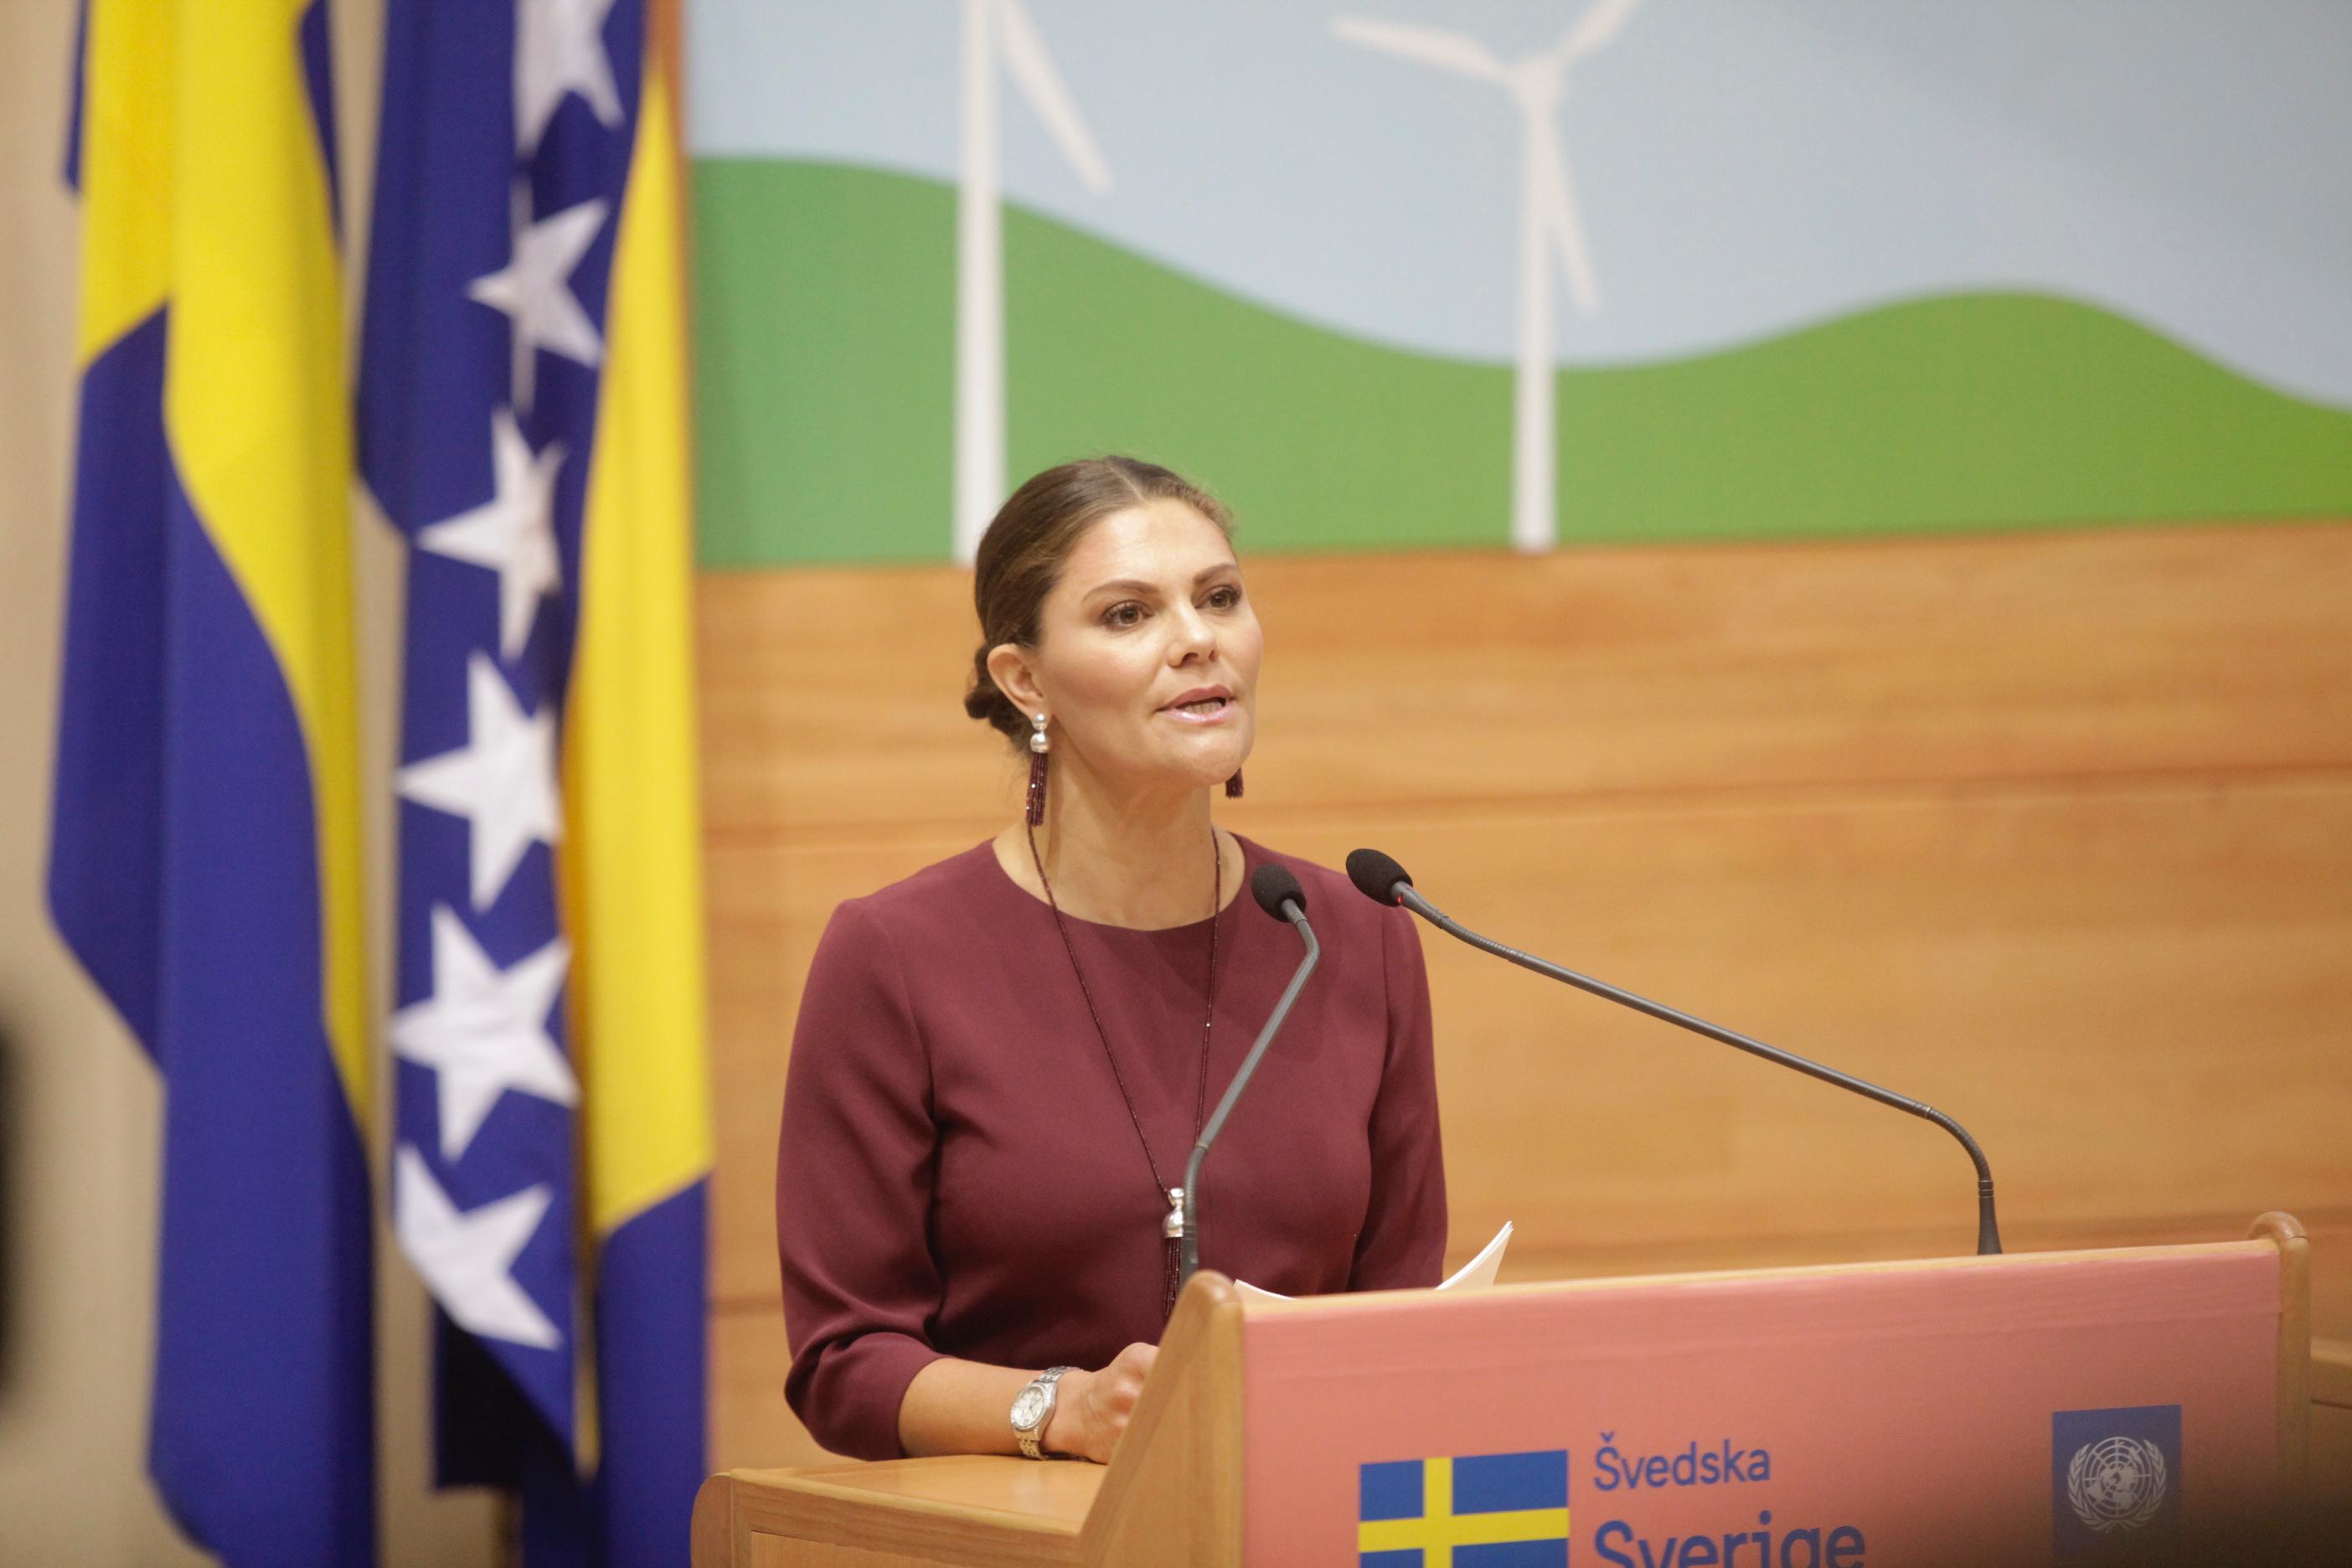 Princeza Viktorija: Oko 60 hiljada izbjeglica iz BiH je pomoglo da izgradimo bolji i dinamičniji život u Švedskoj